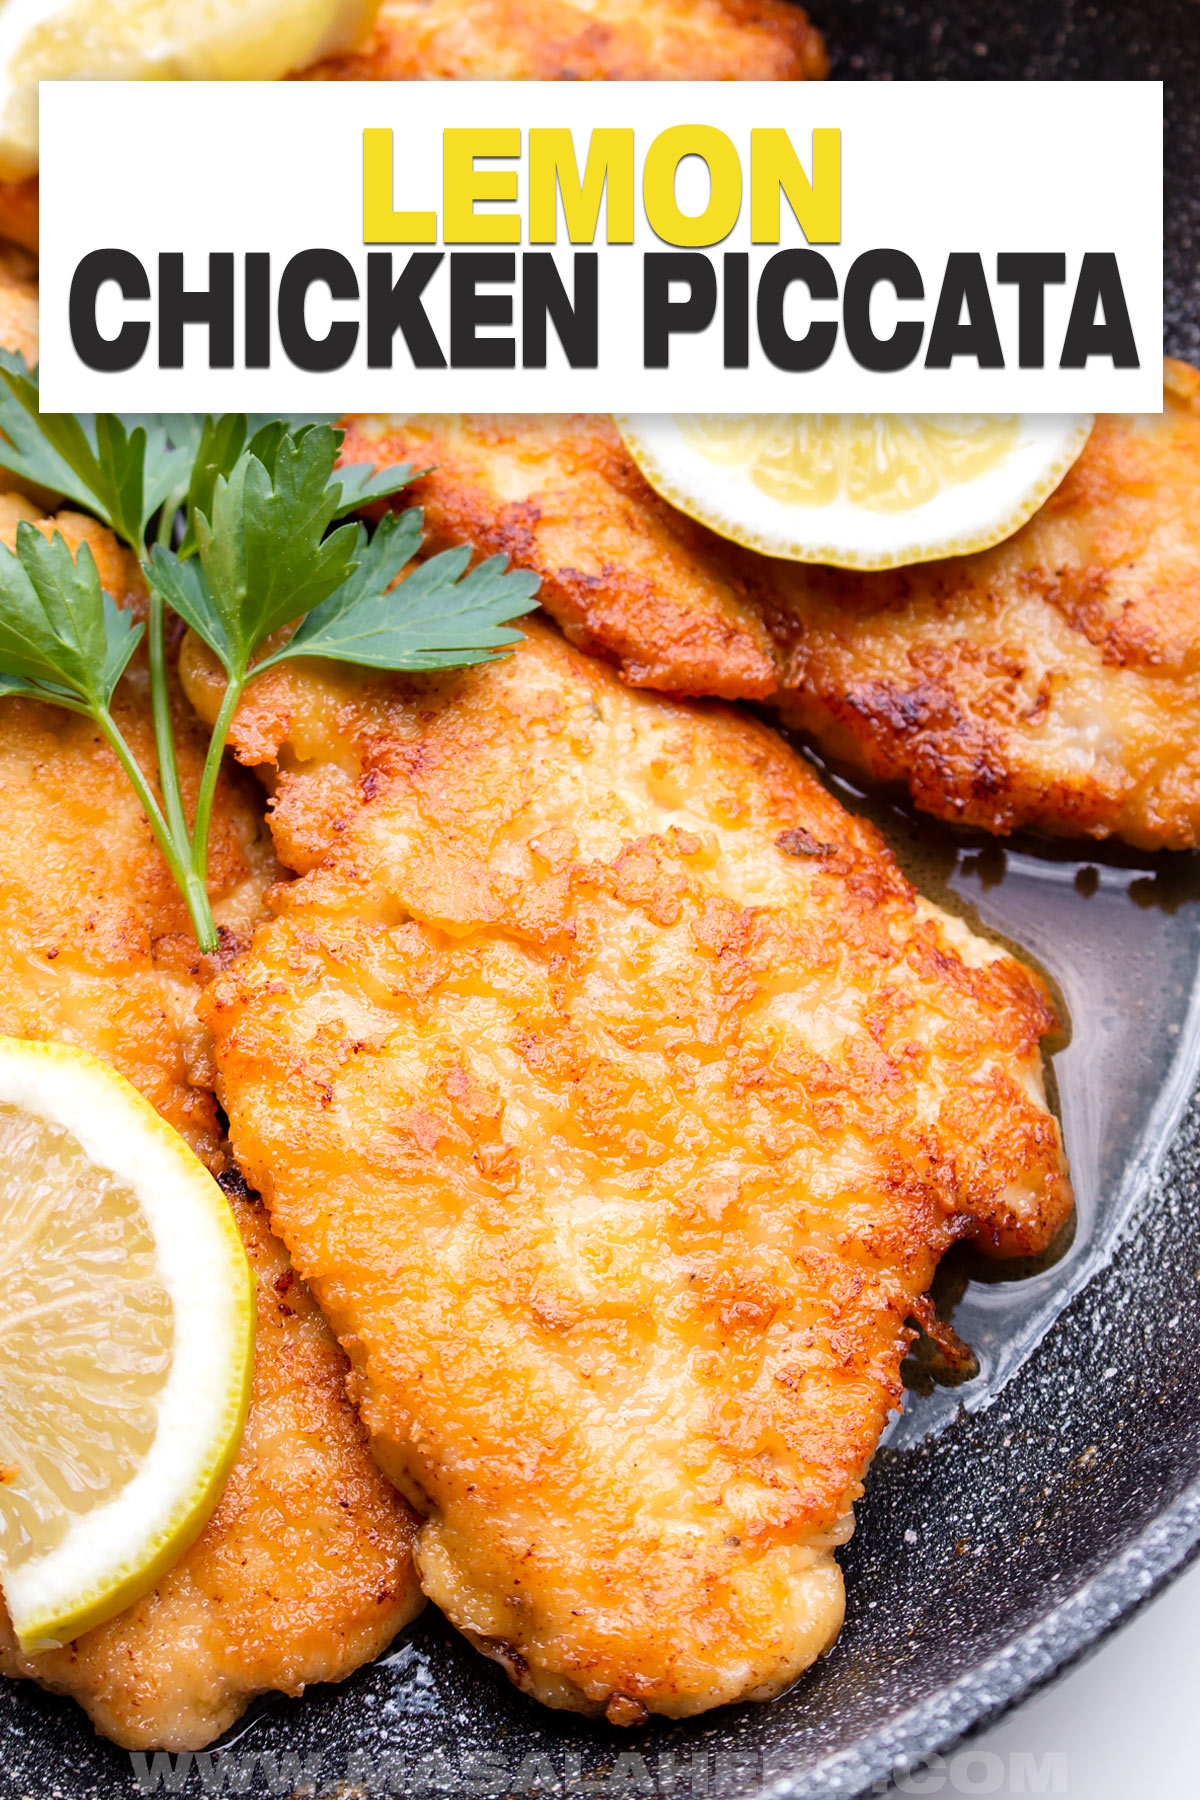 Lemon Chicken Piccata Recipe cover image